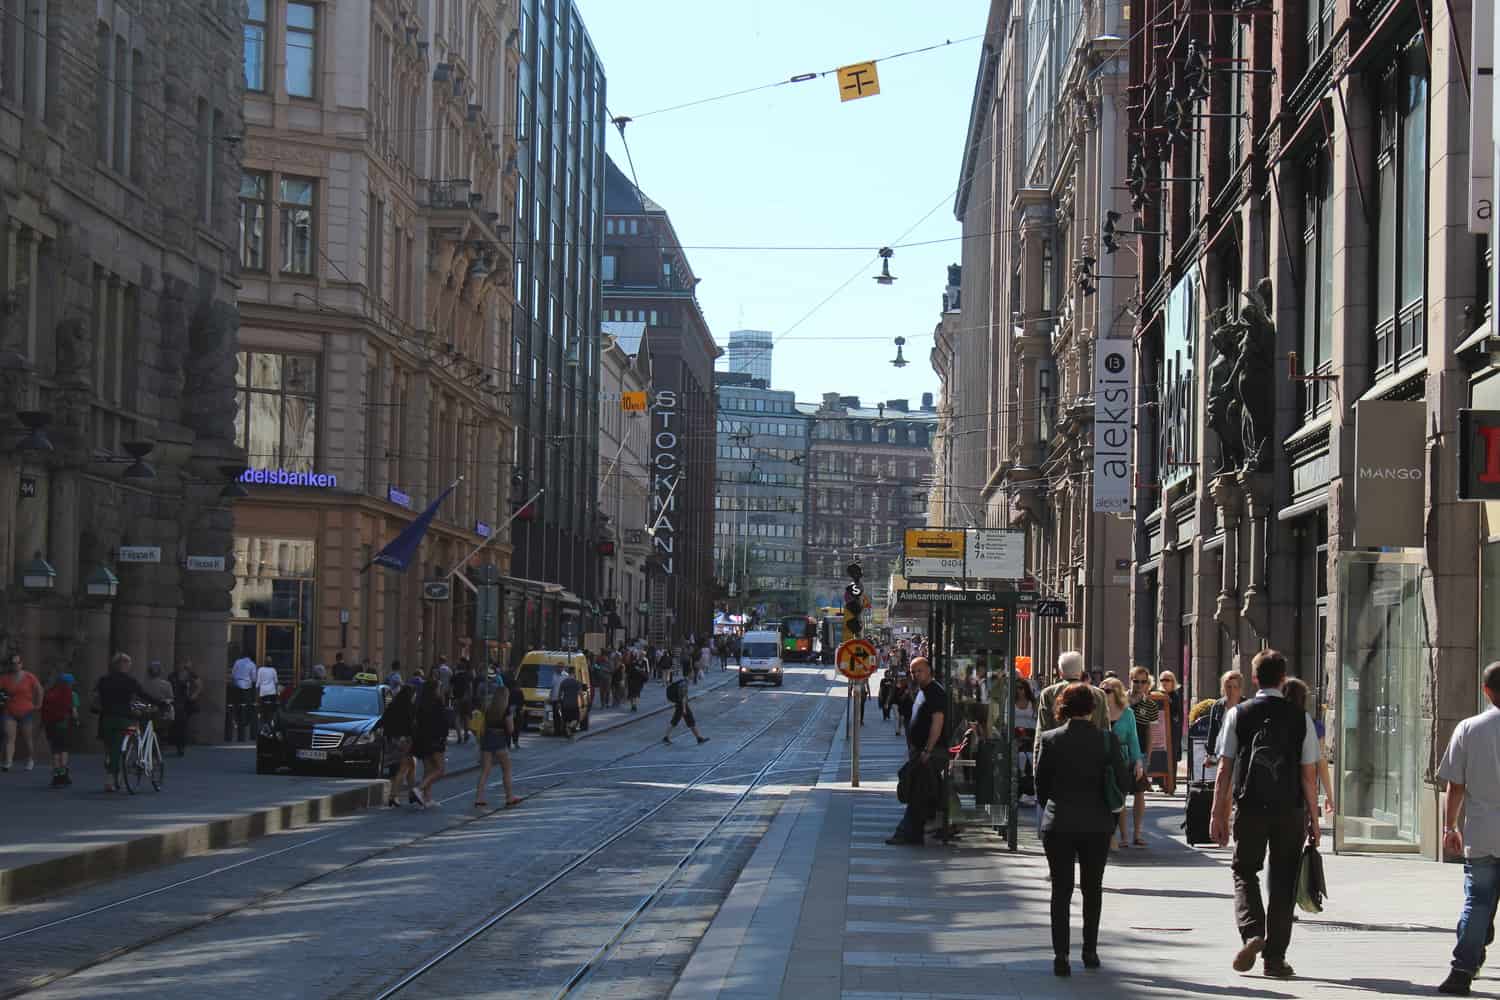 Helsinki street, Finland